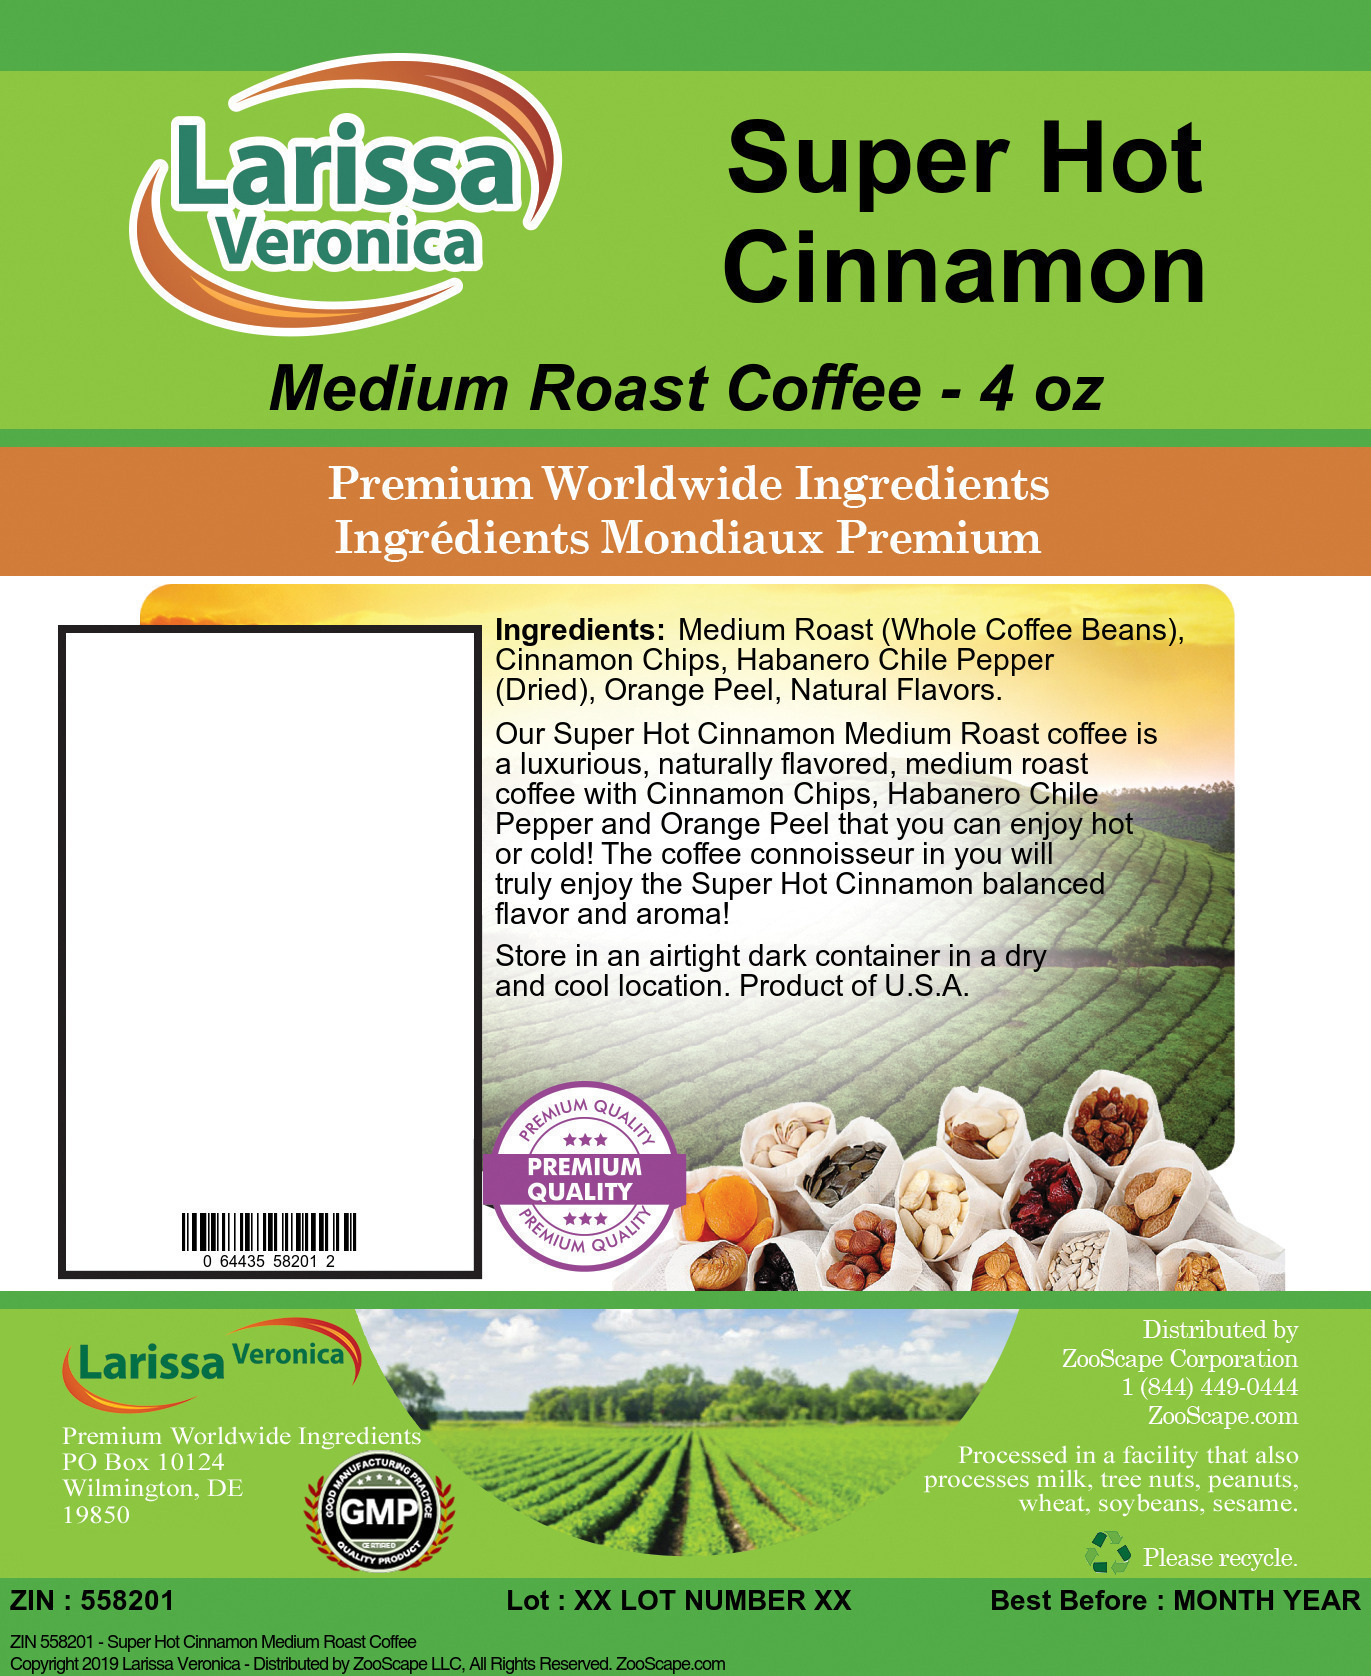 Super Hot Cinnamon Medium Roast Coffee - Label